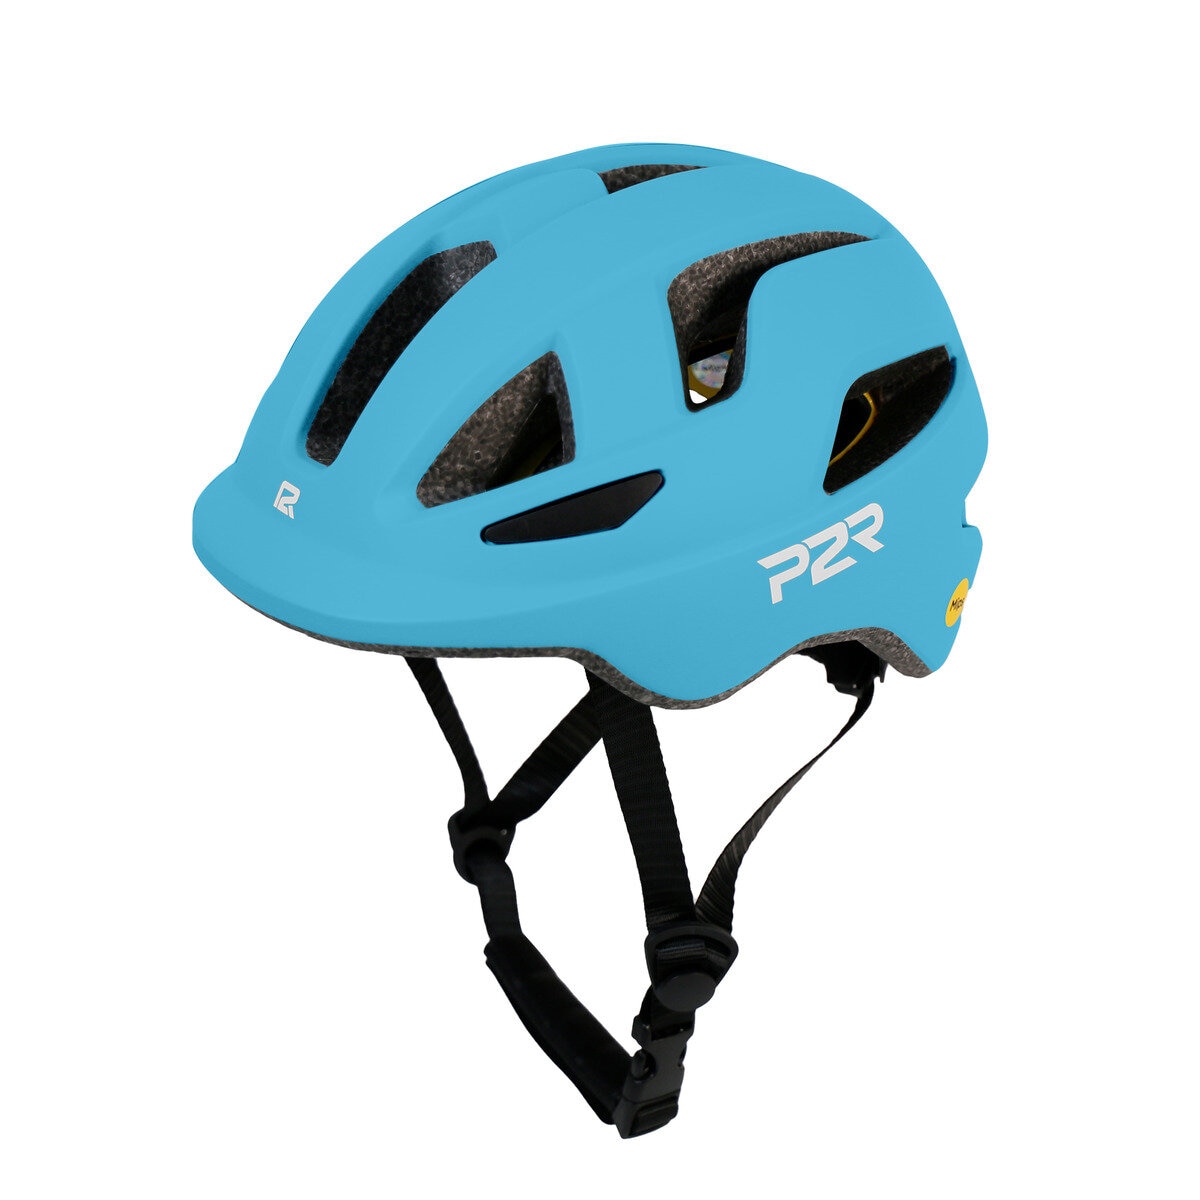 P2R MIPS搭載 自転車用インモールドヘルメット 子供用